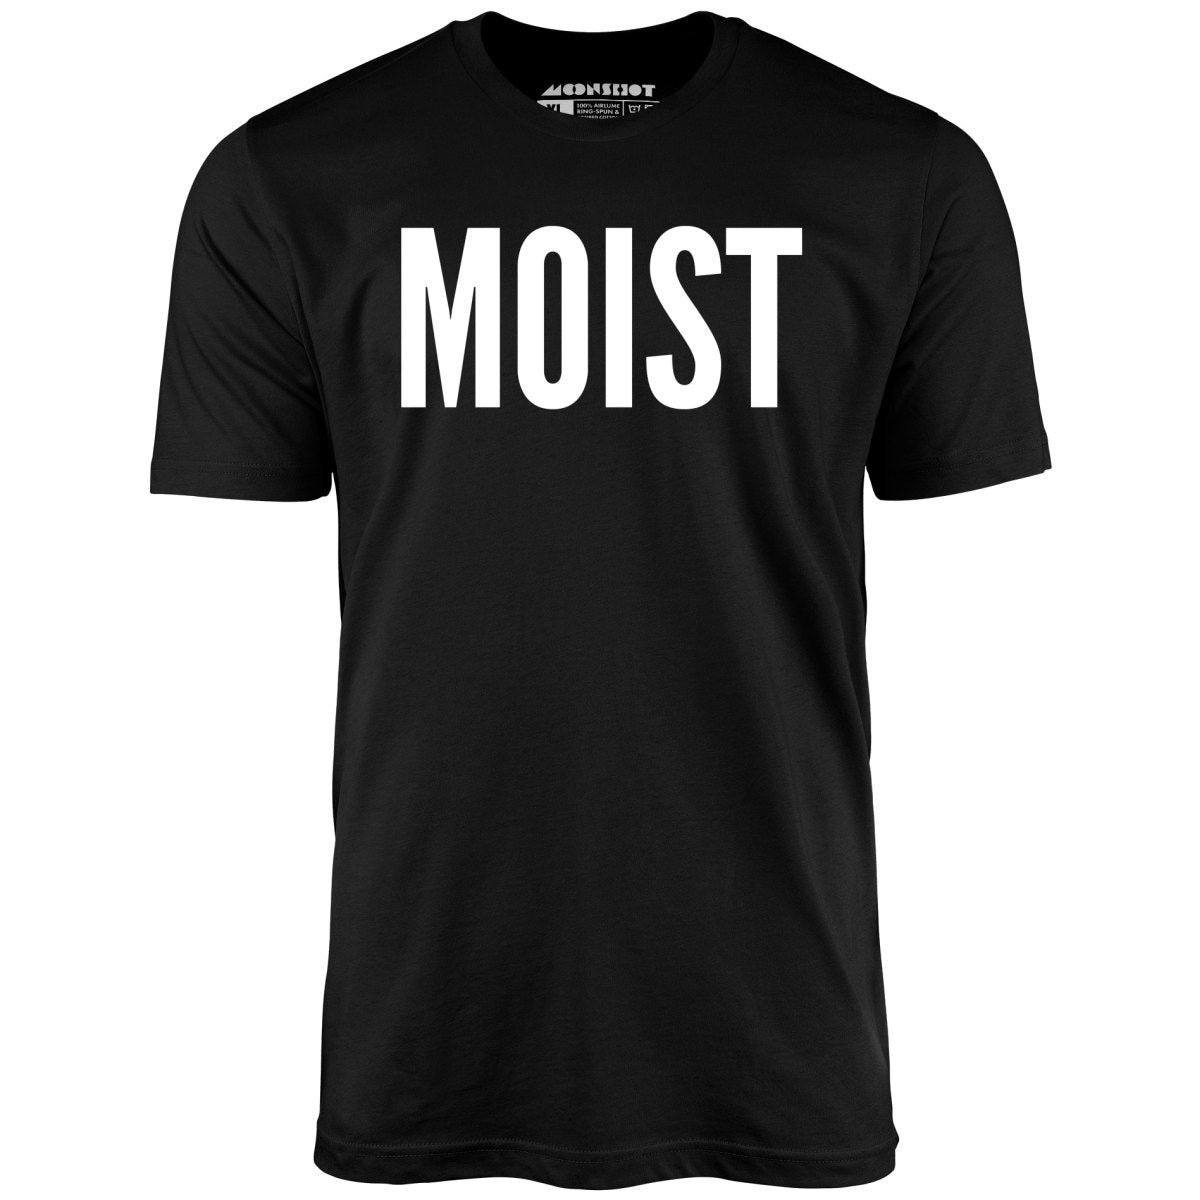 Moist - Unisex T-Shirt